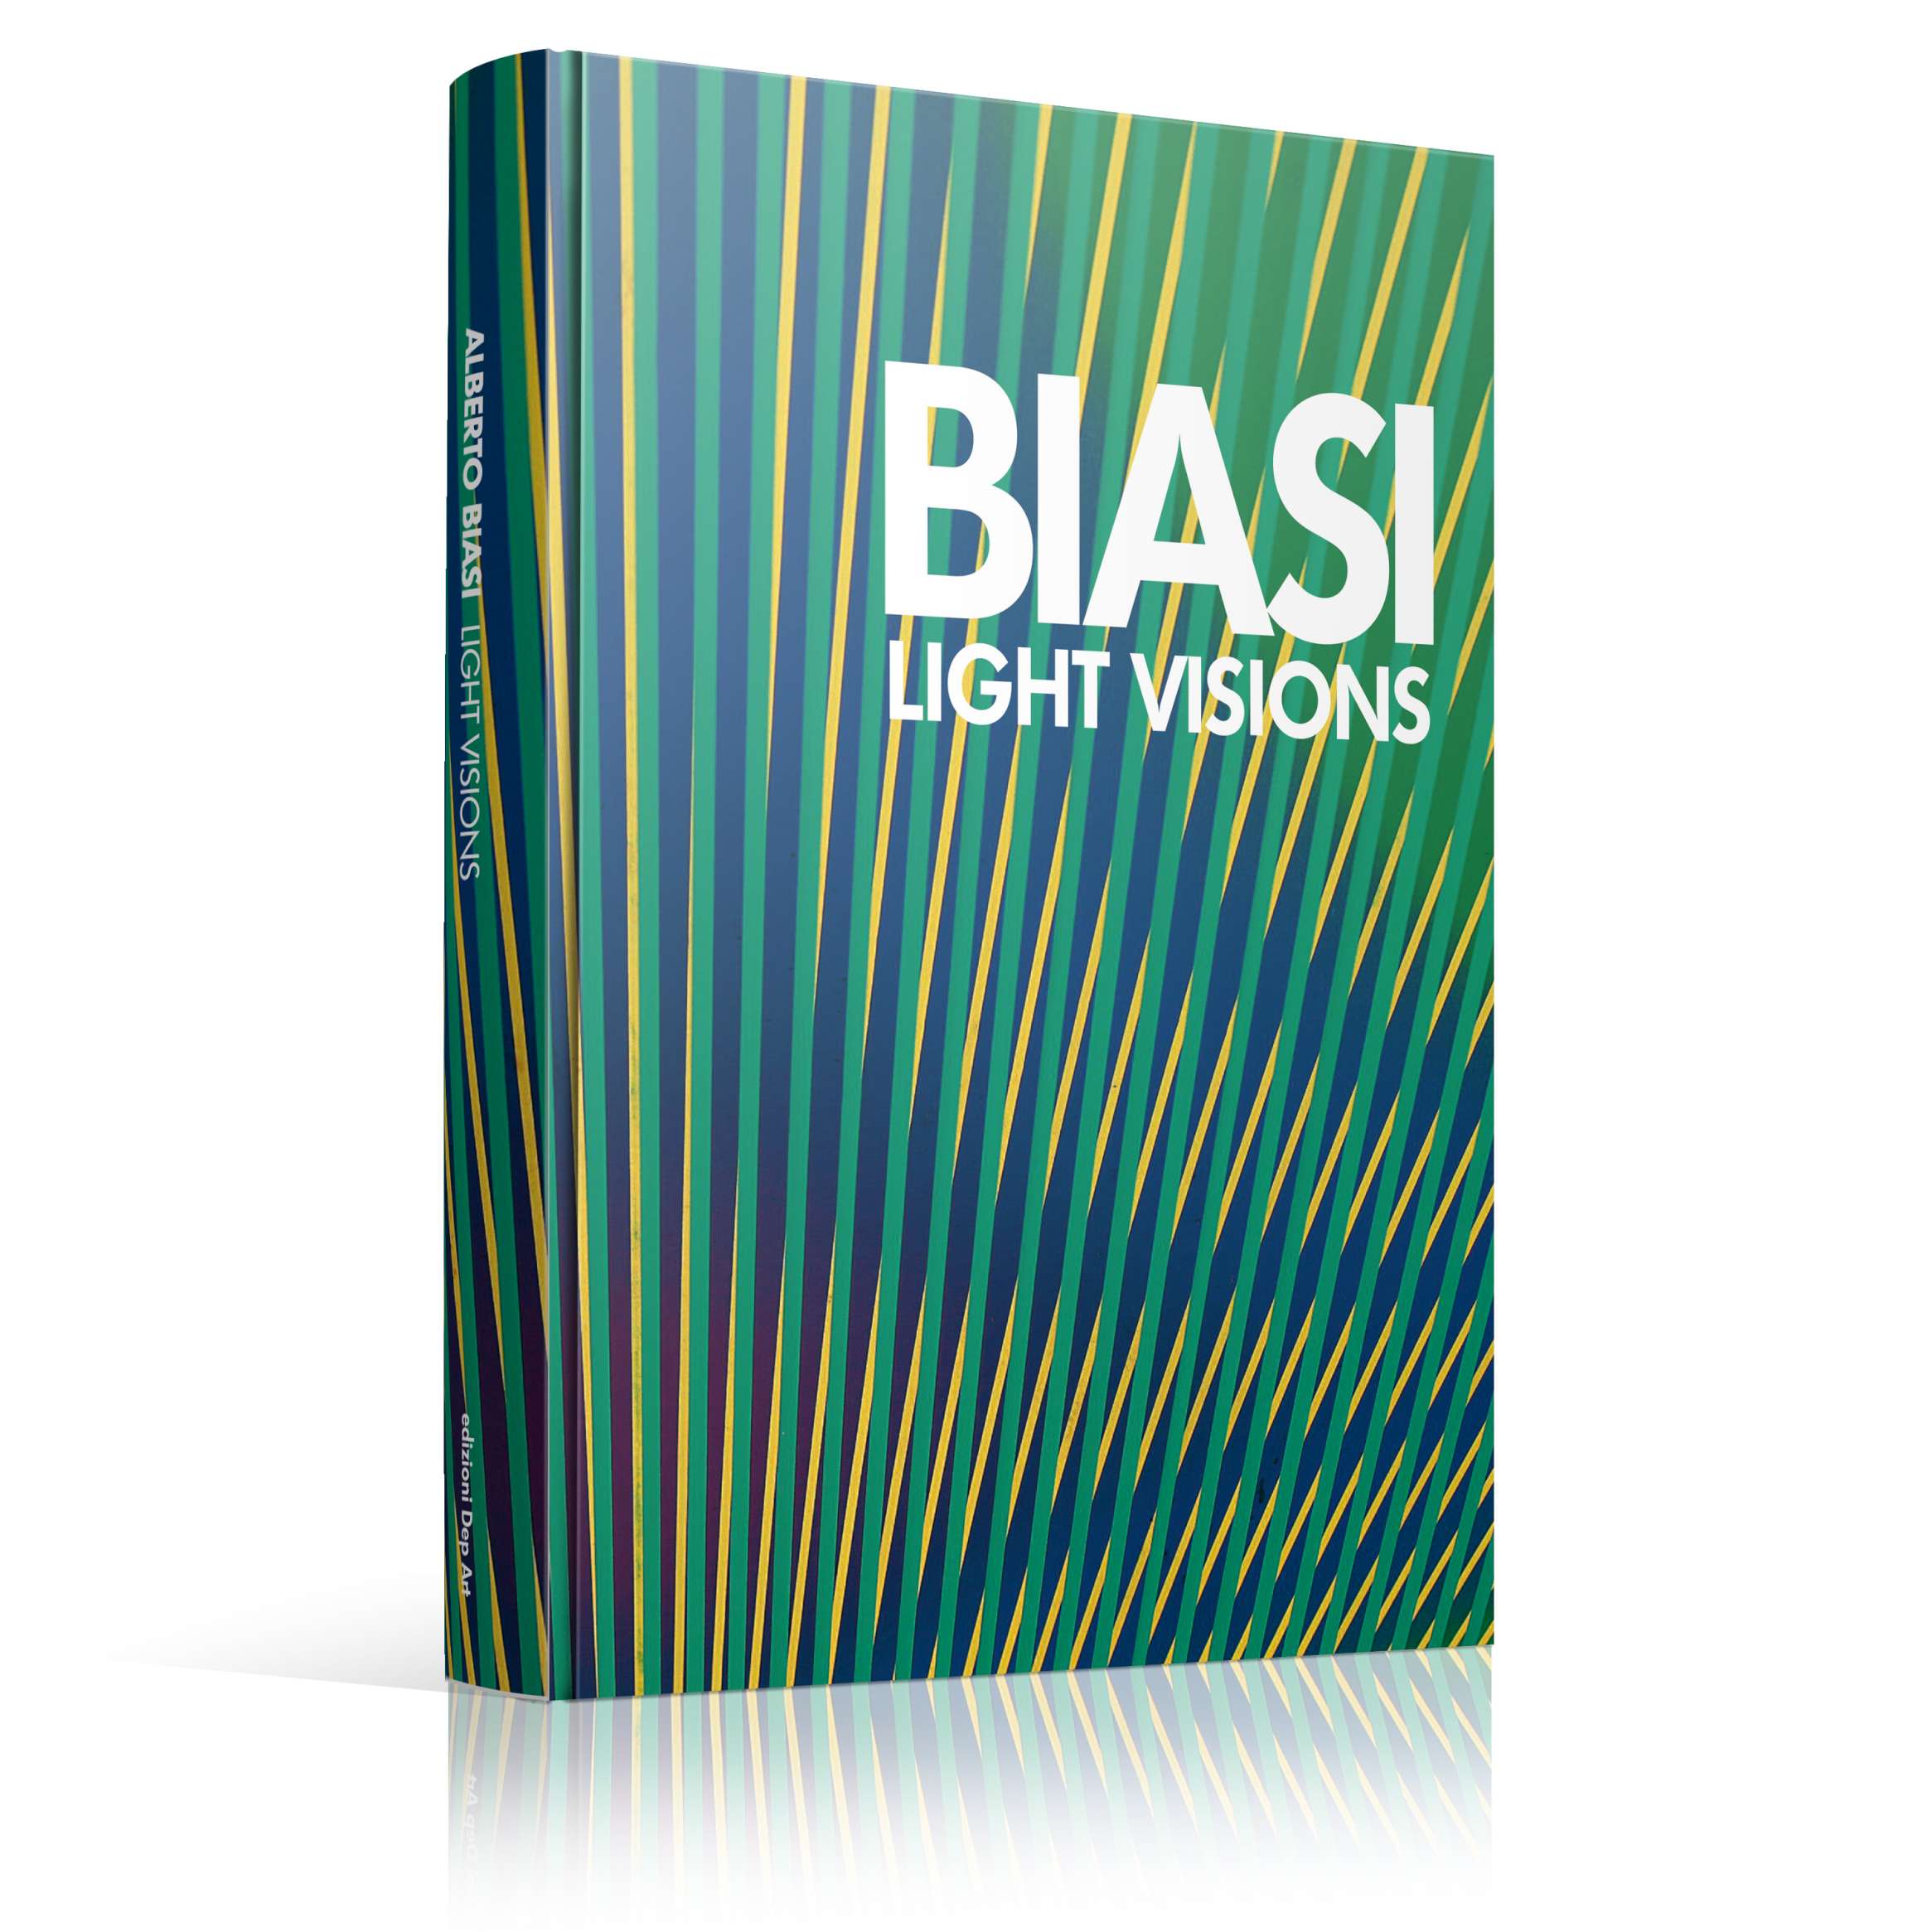 Alberto-BIASI-Light-visions